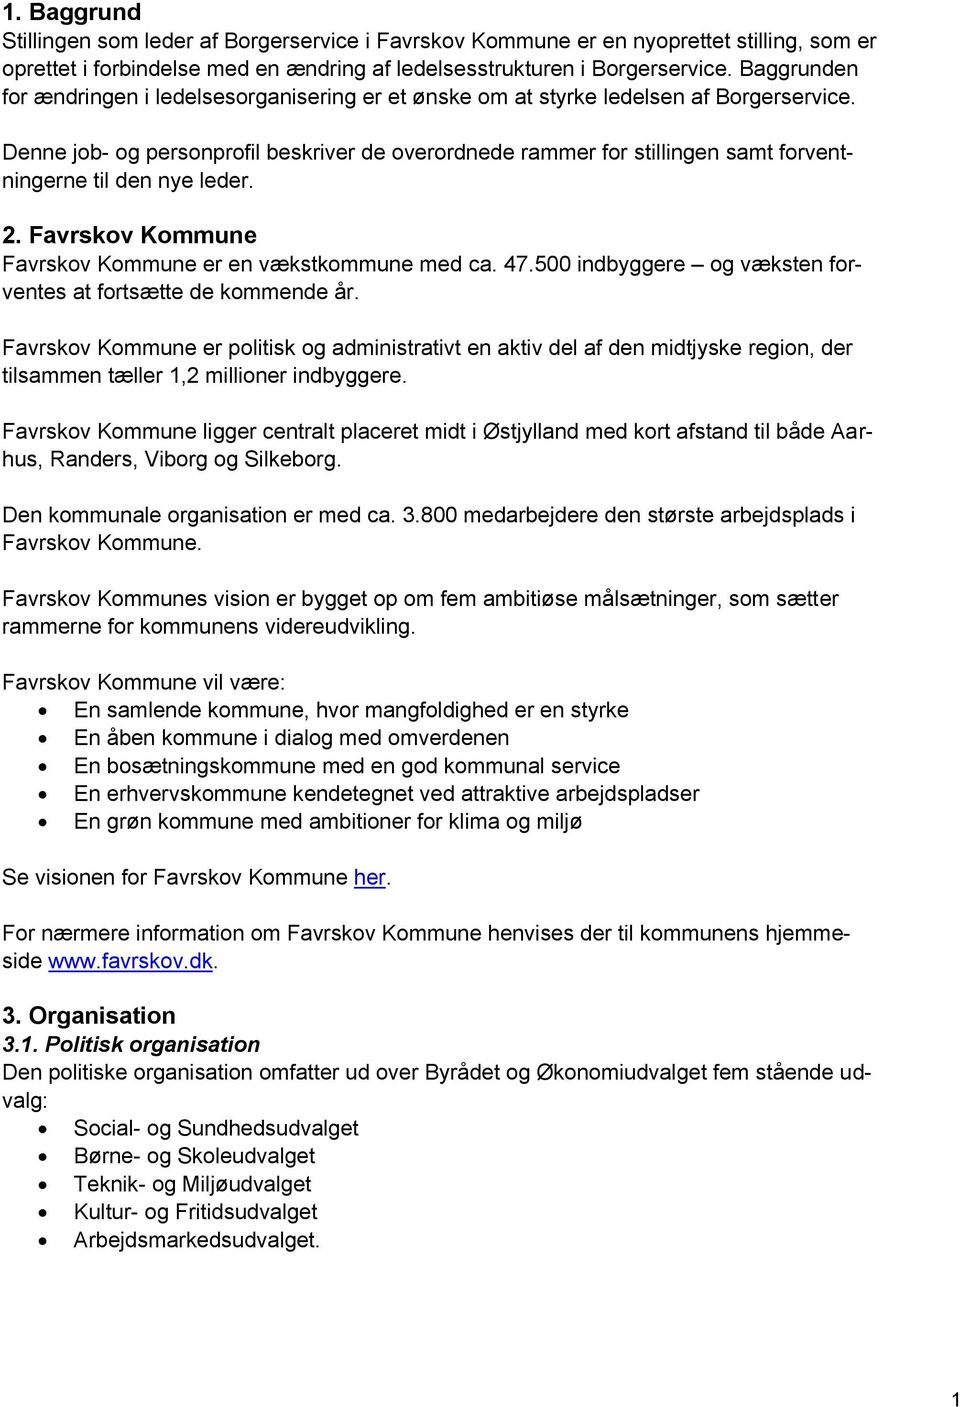 Job- og personprofil til stillingen som leder af Borgerservice i Favrskov  Kommune - PDF Free Download